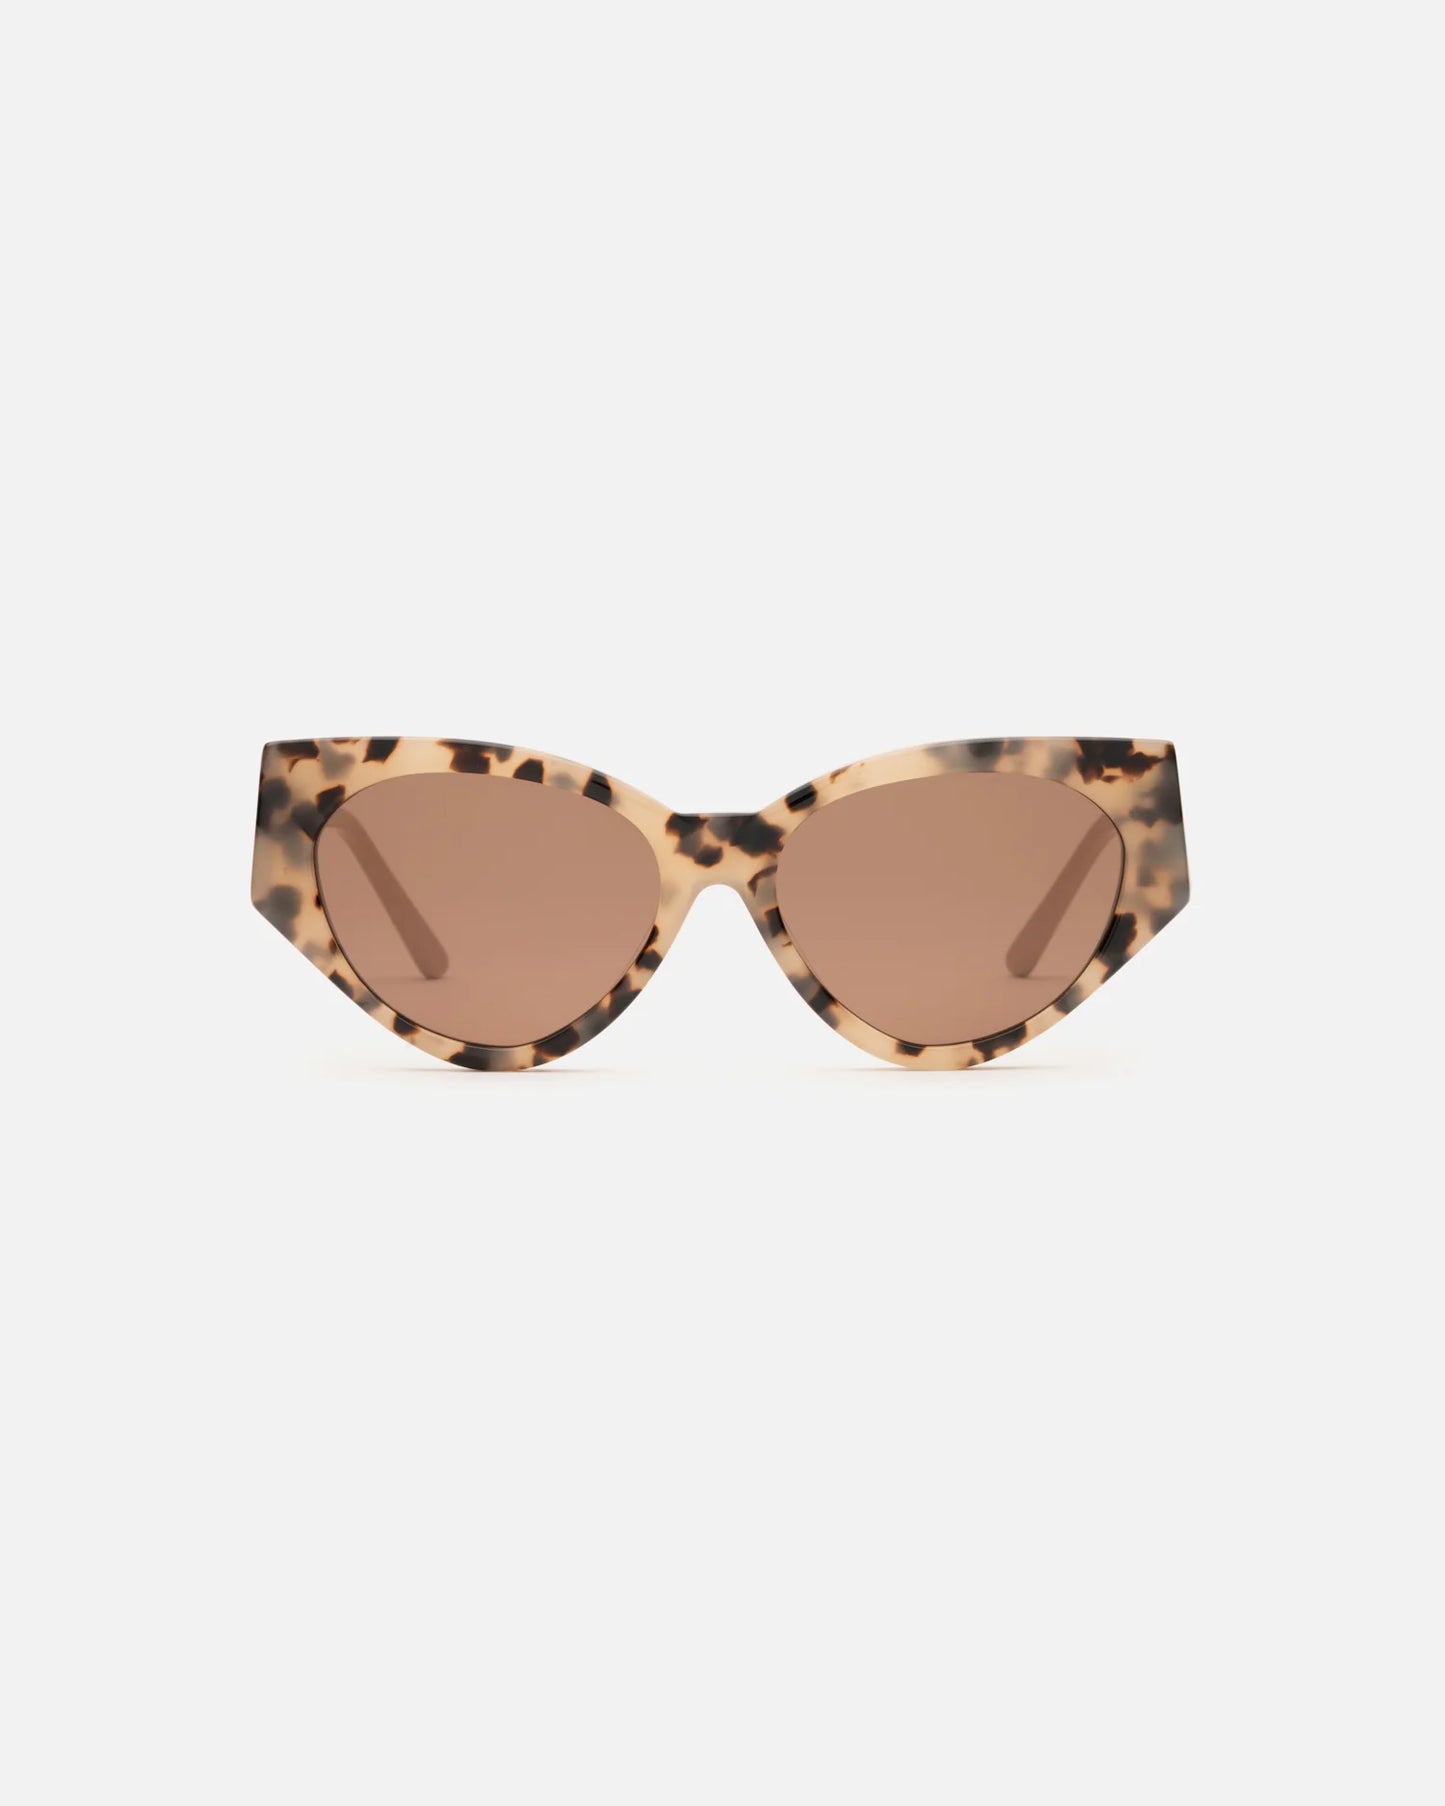 Milou - Choc Tort Sunglasses